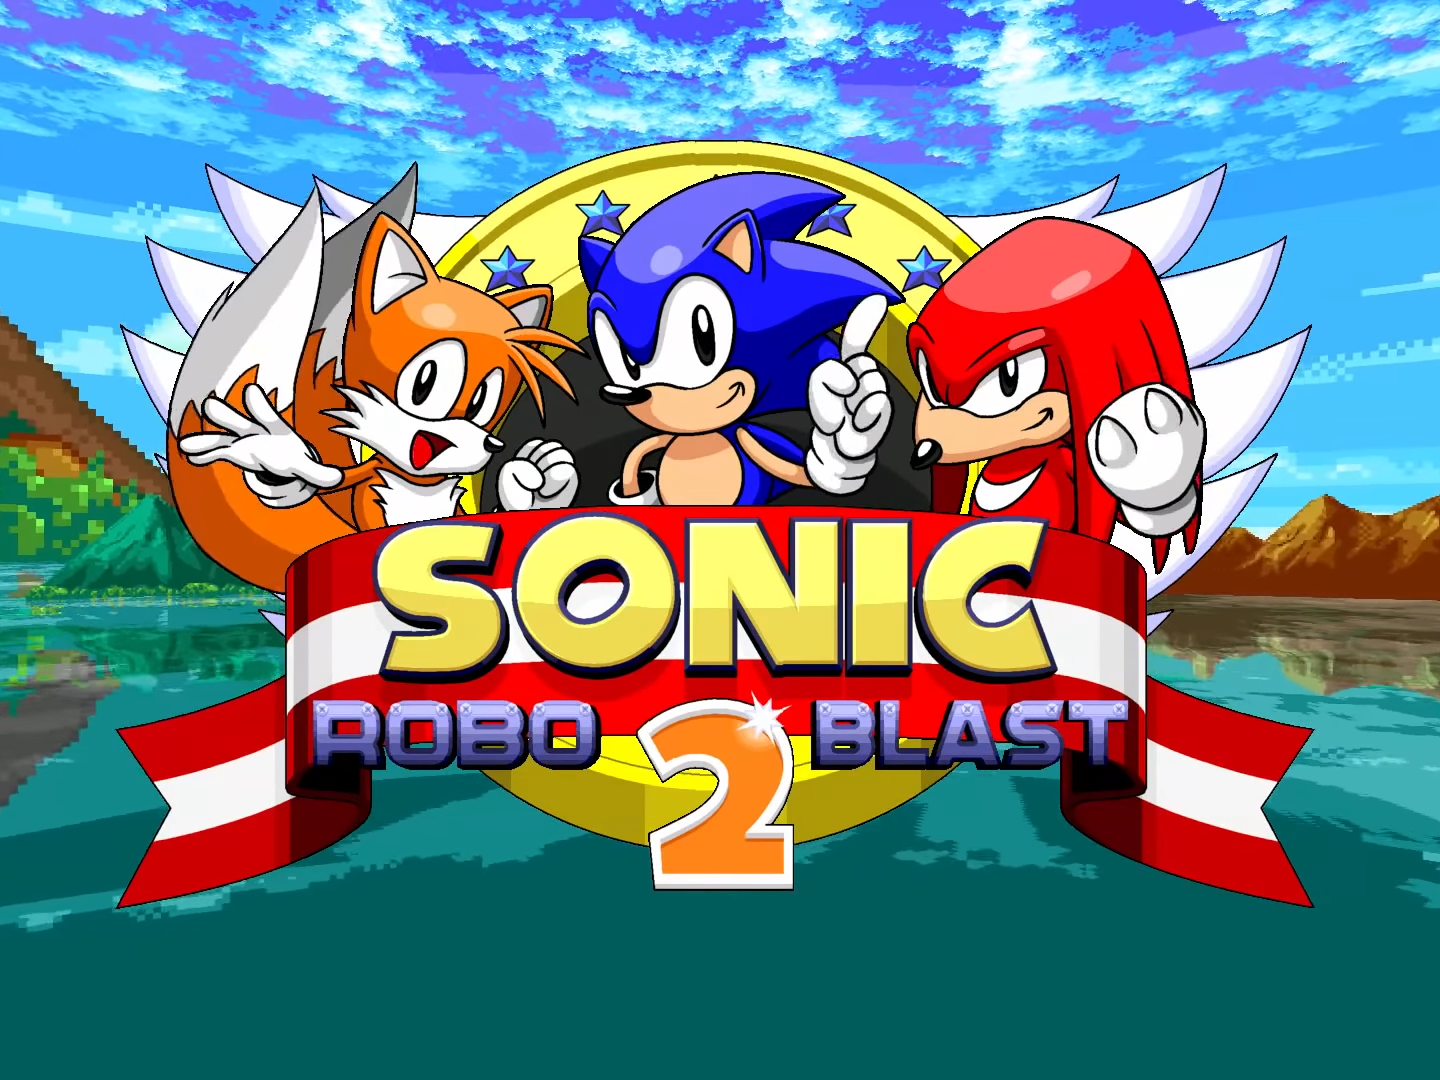 Sonic Robo Blast 2 v2.2.4 Full file - Mod DB